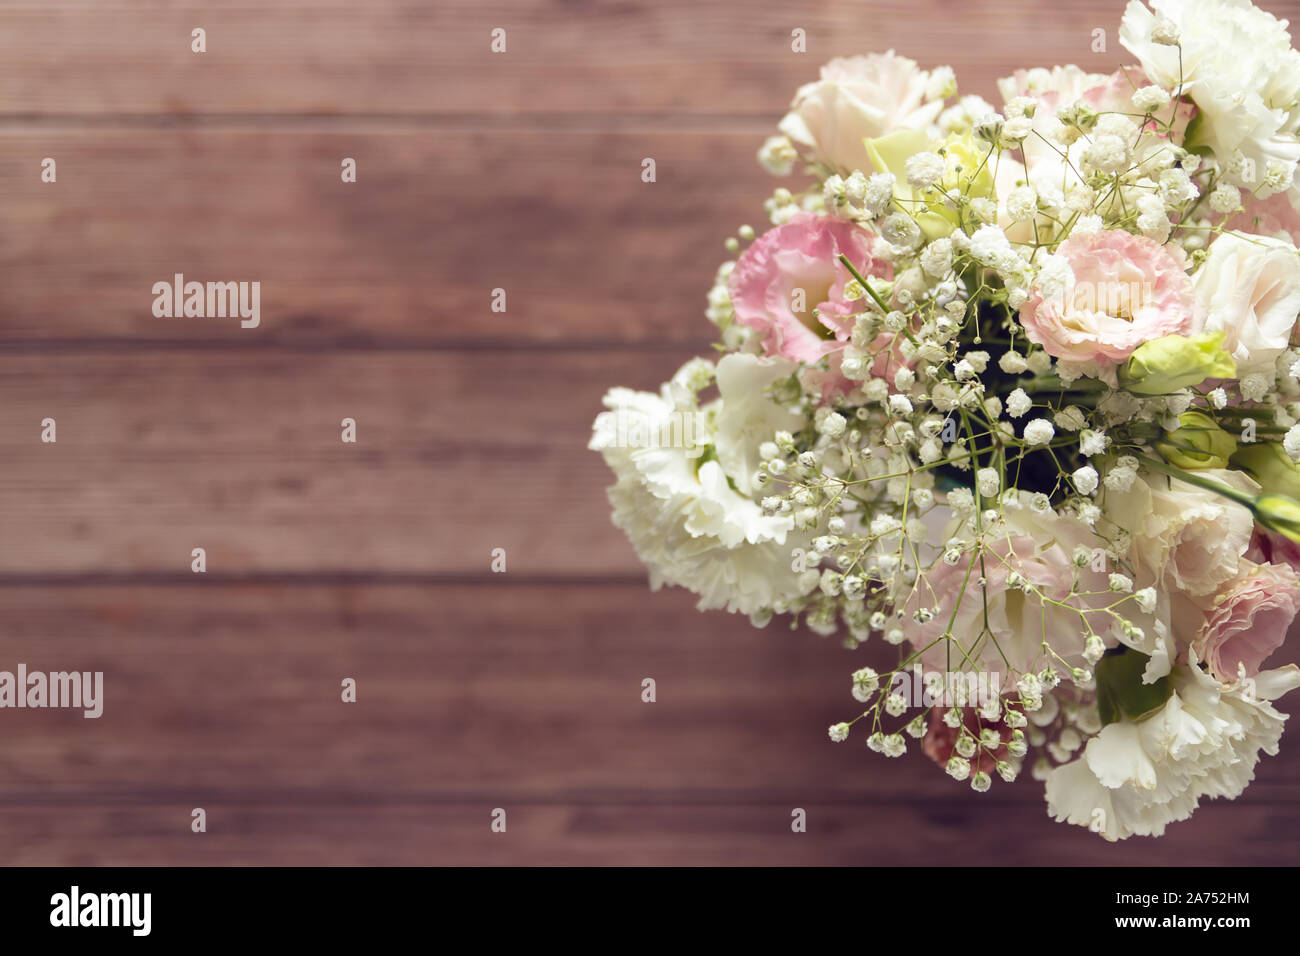 Blick von oben auf die wunderschönen, romantischen Blumenstrauß frischen Frühling Blumen auf hölzernen Tisch Hintergrund mit Kopie Raum Stockfoto